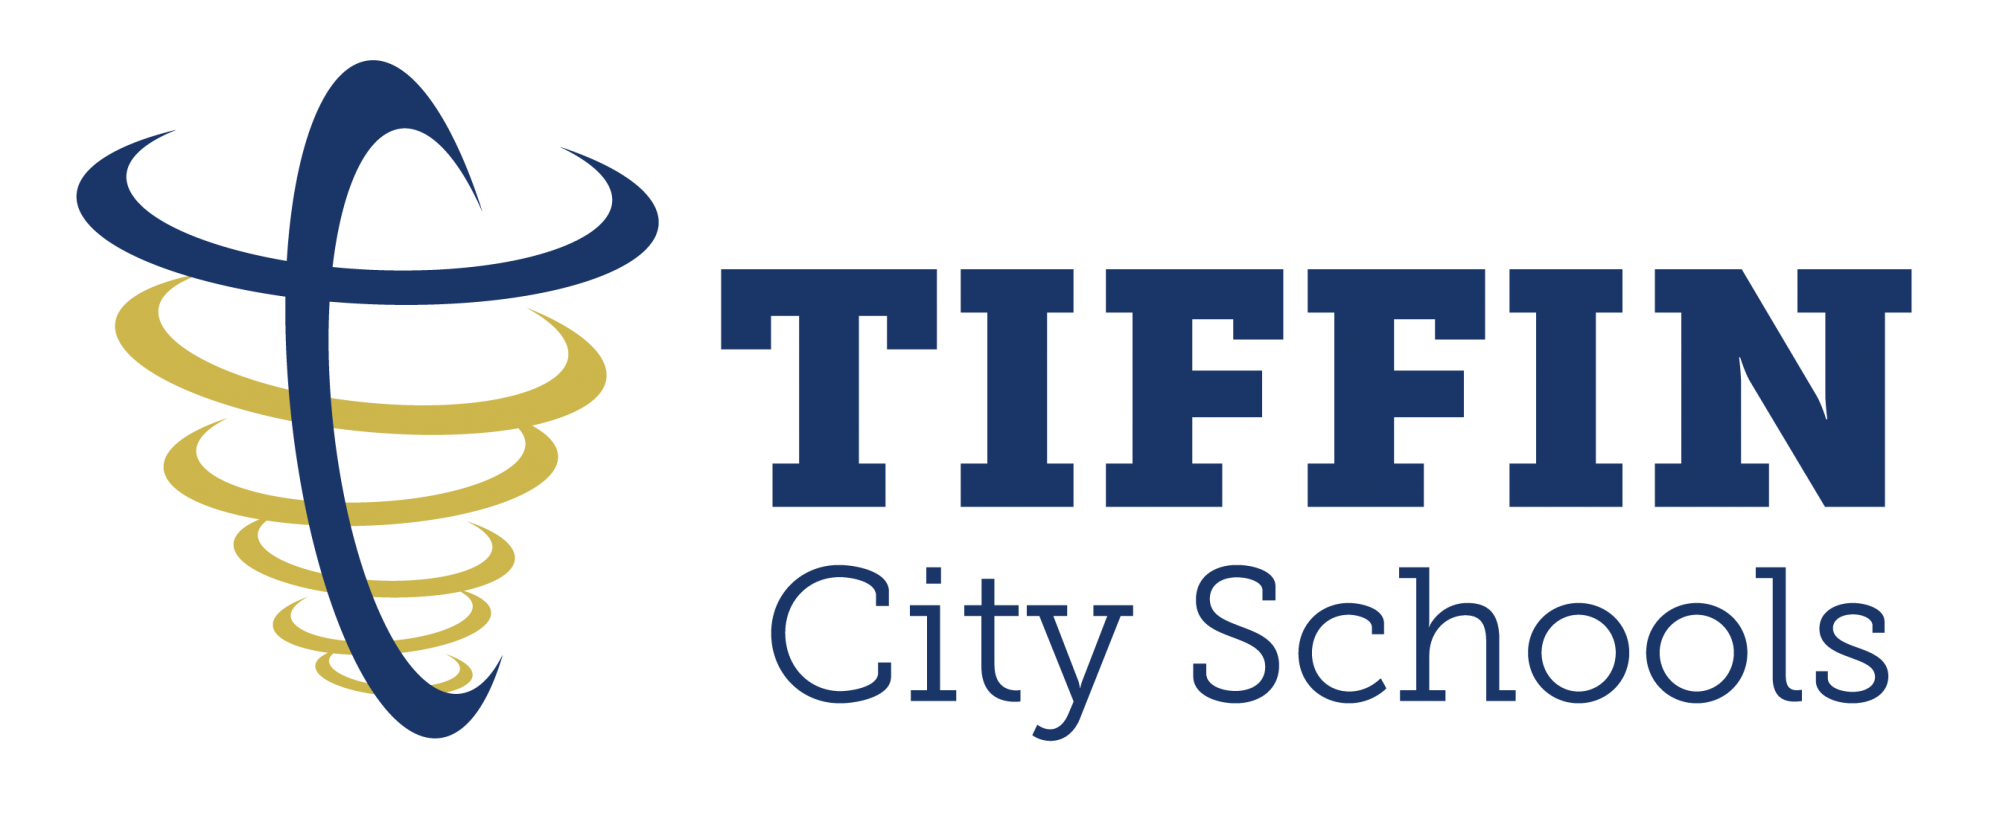 Tiffin City Schools